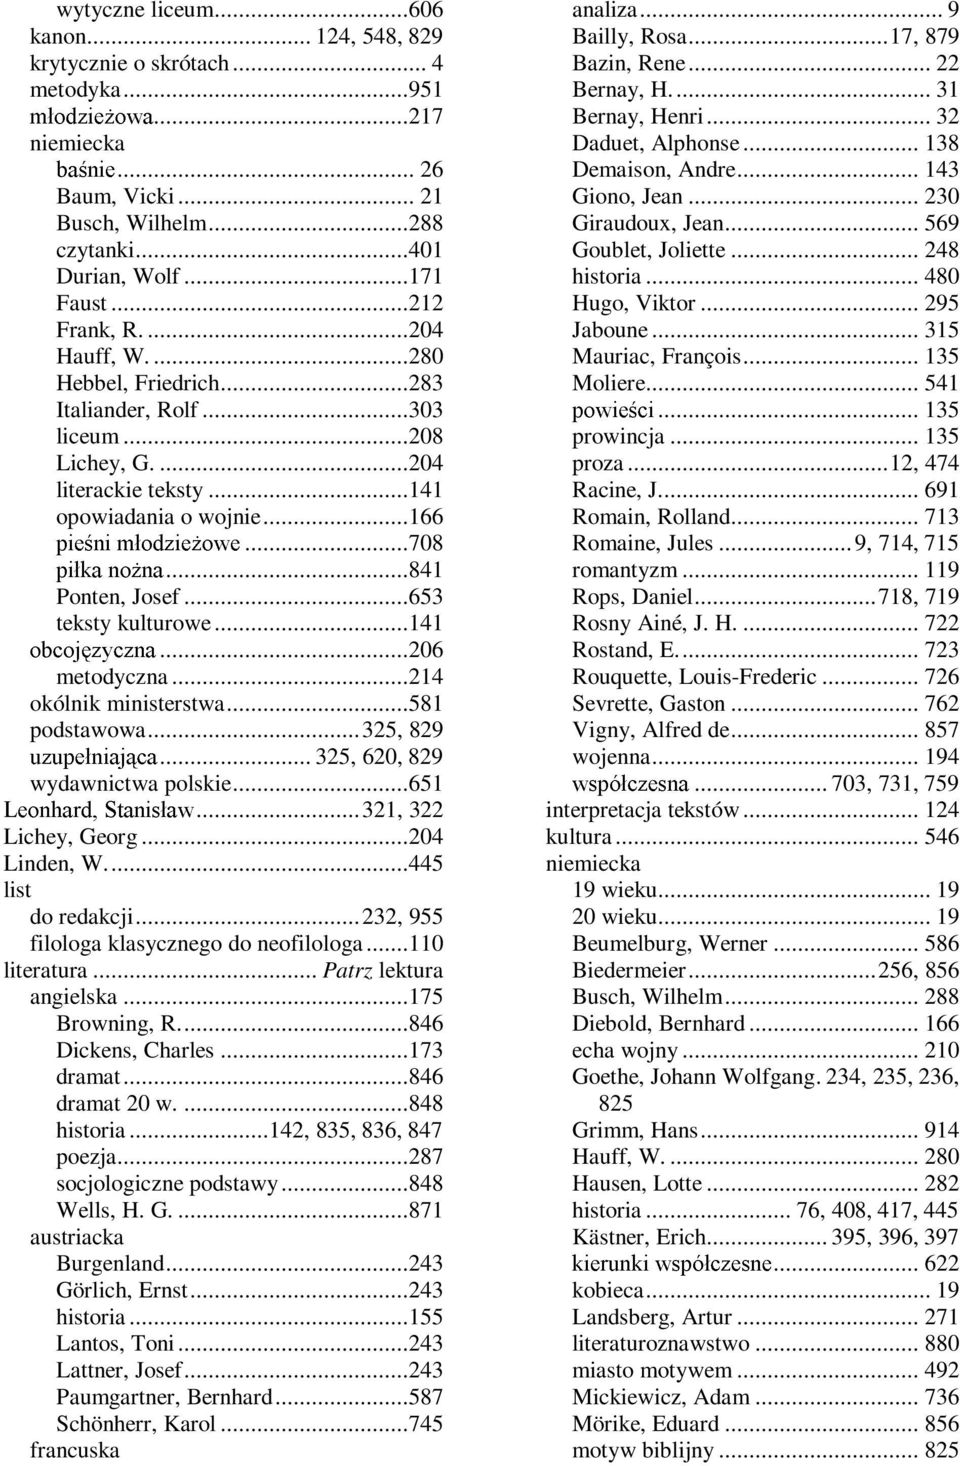 ..653 teksty kulturowe...141...206 metodyczna...214 okólnik ministerstwa...581 podstawowa...325, 829... 325, 620, 829 " wydawnictwa 5 polskie...651...321, 322 Lichey, Georg...204 Linden, W.